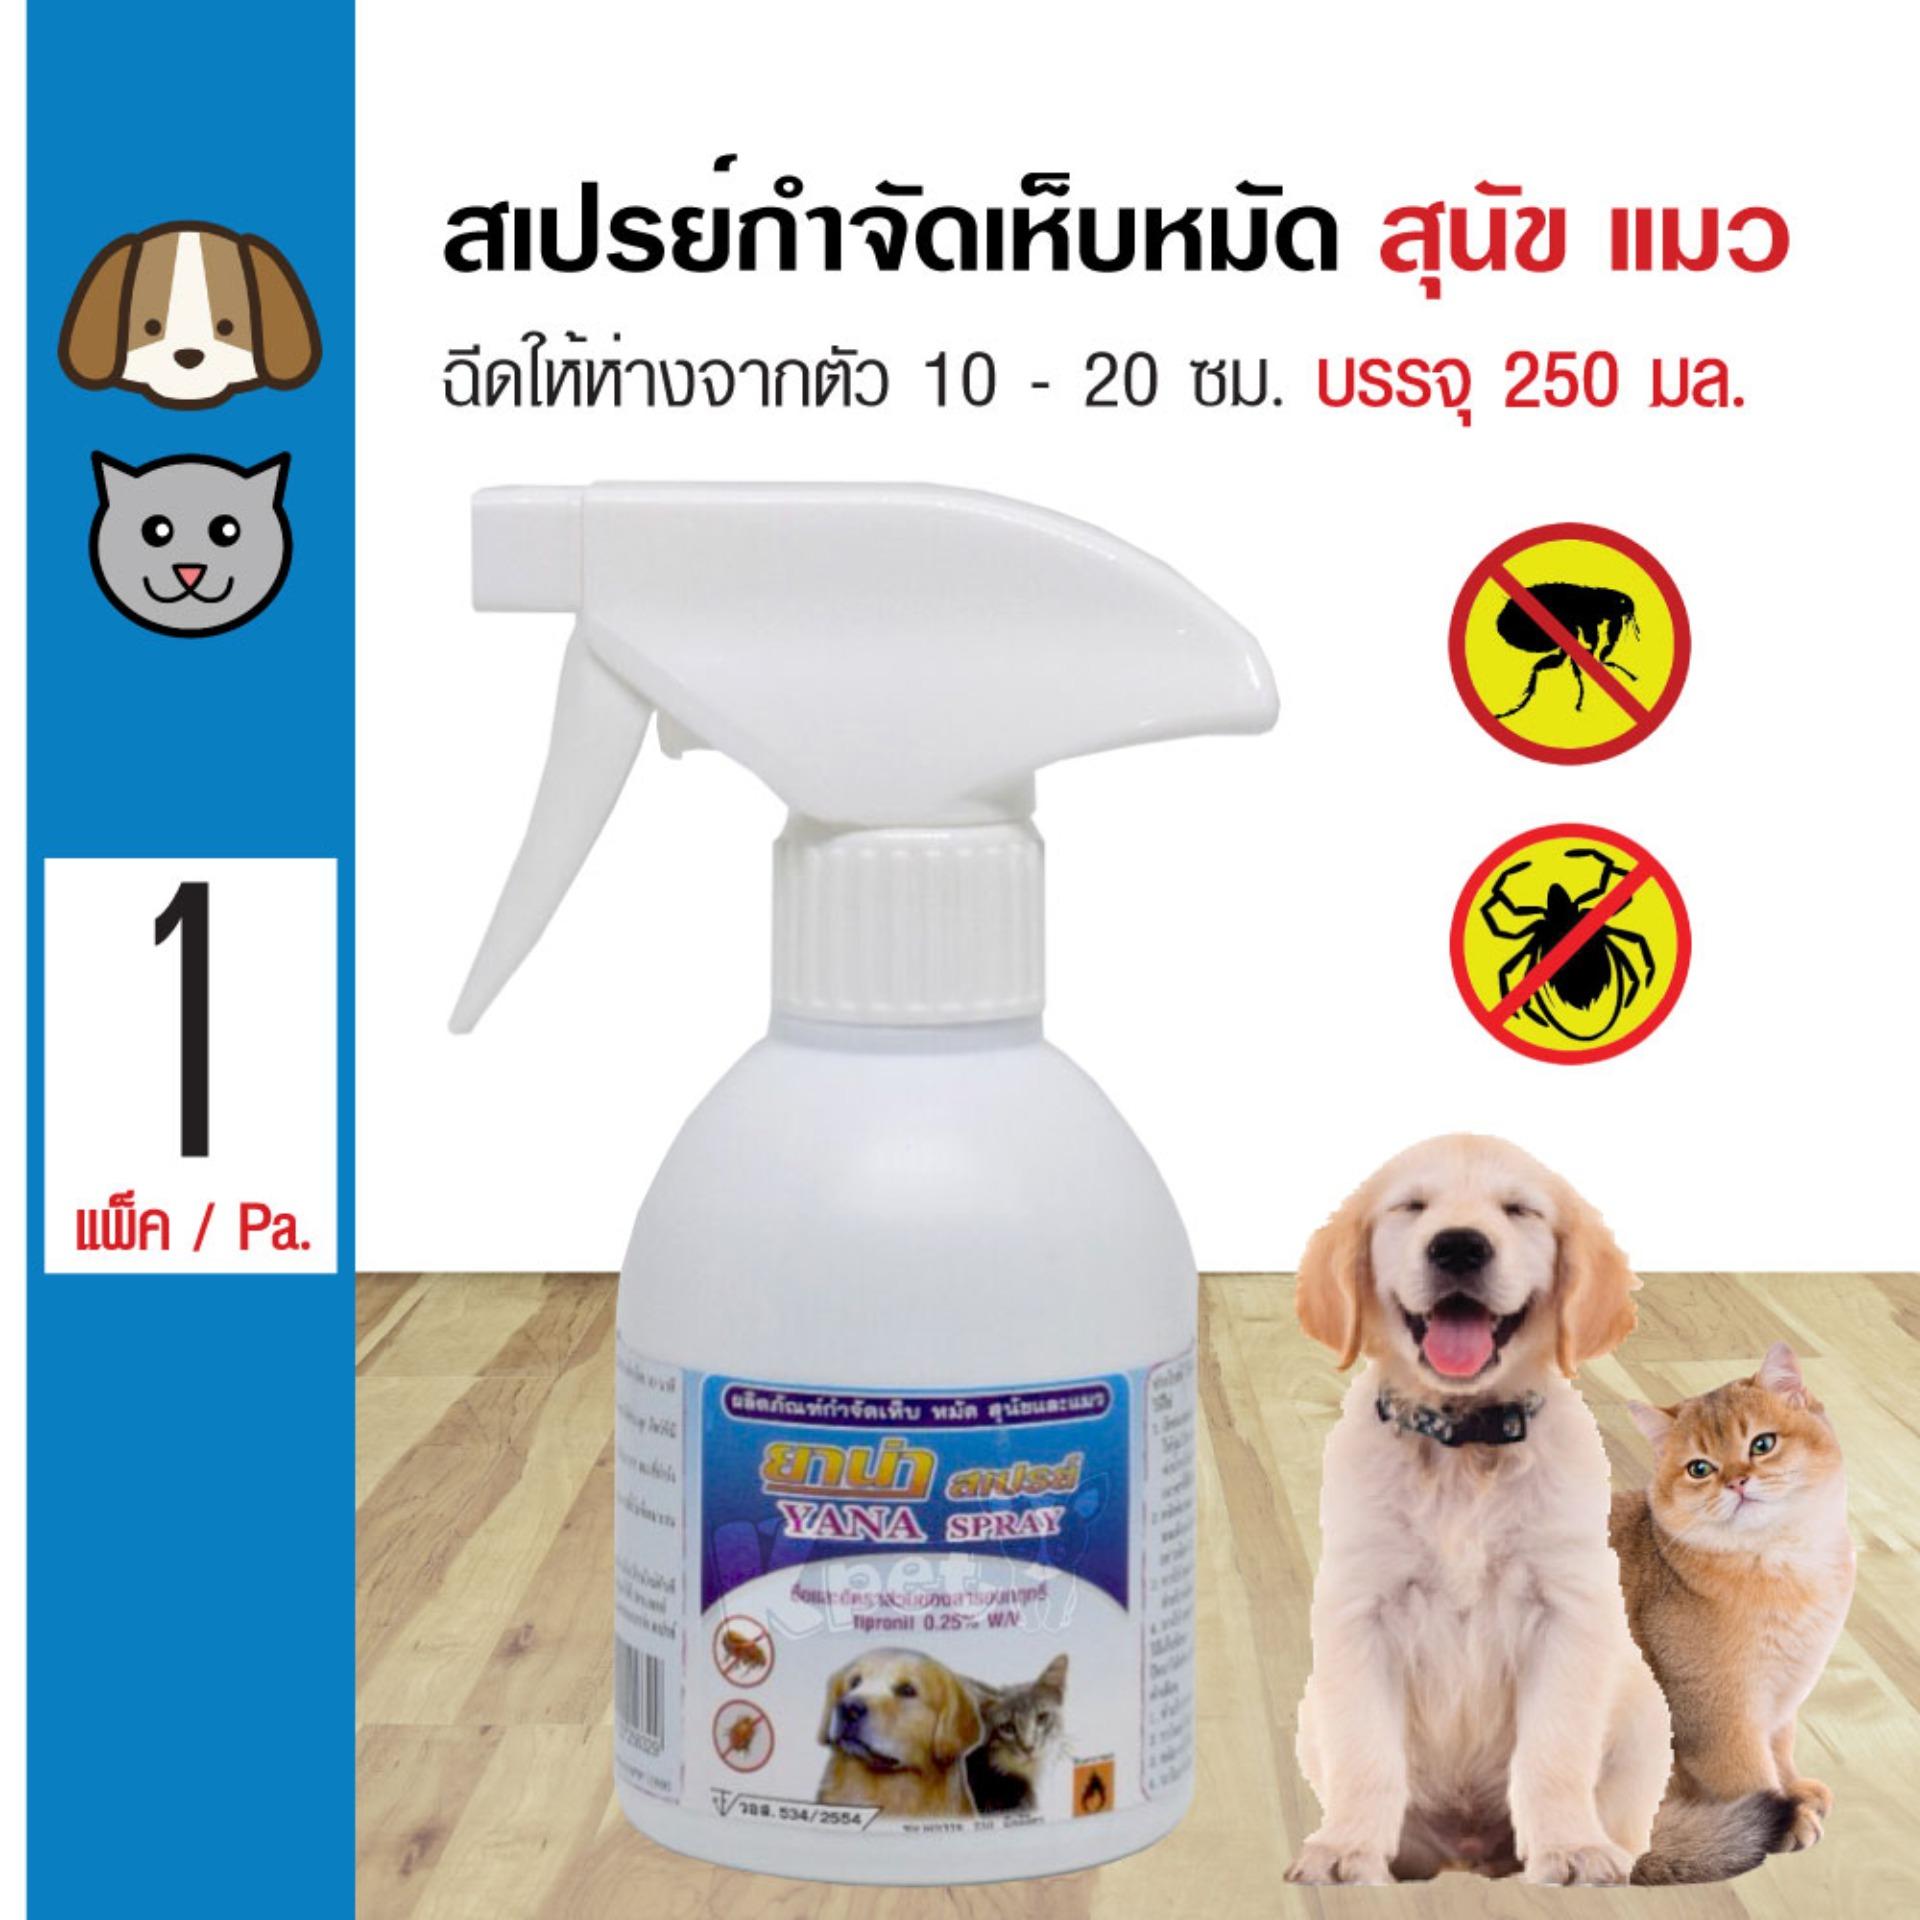 Yana Spray สเปรย์ฉีดกำจัดเห็บหมัด ปลอดภัย สำหรับสุนัข และแมว (250 มล./ขวด)